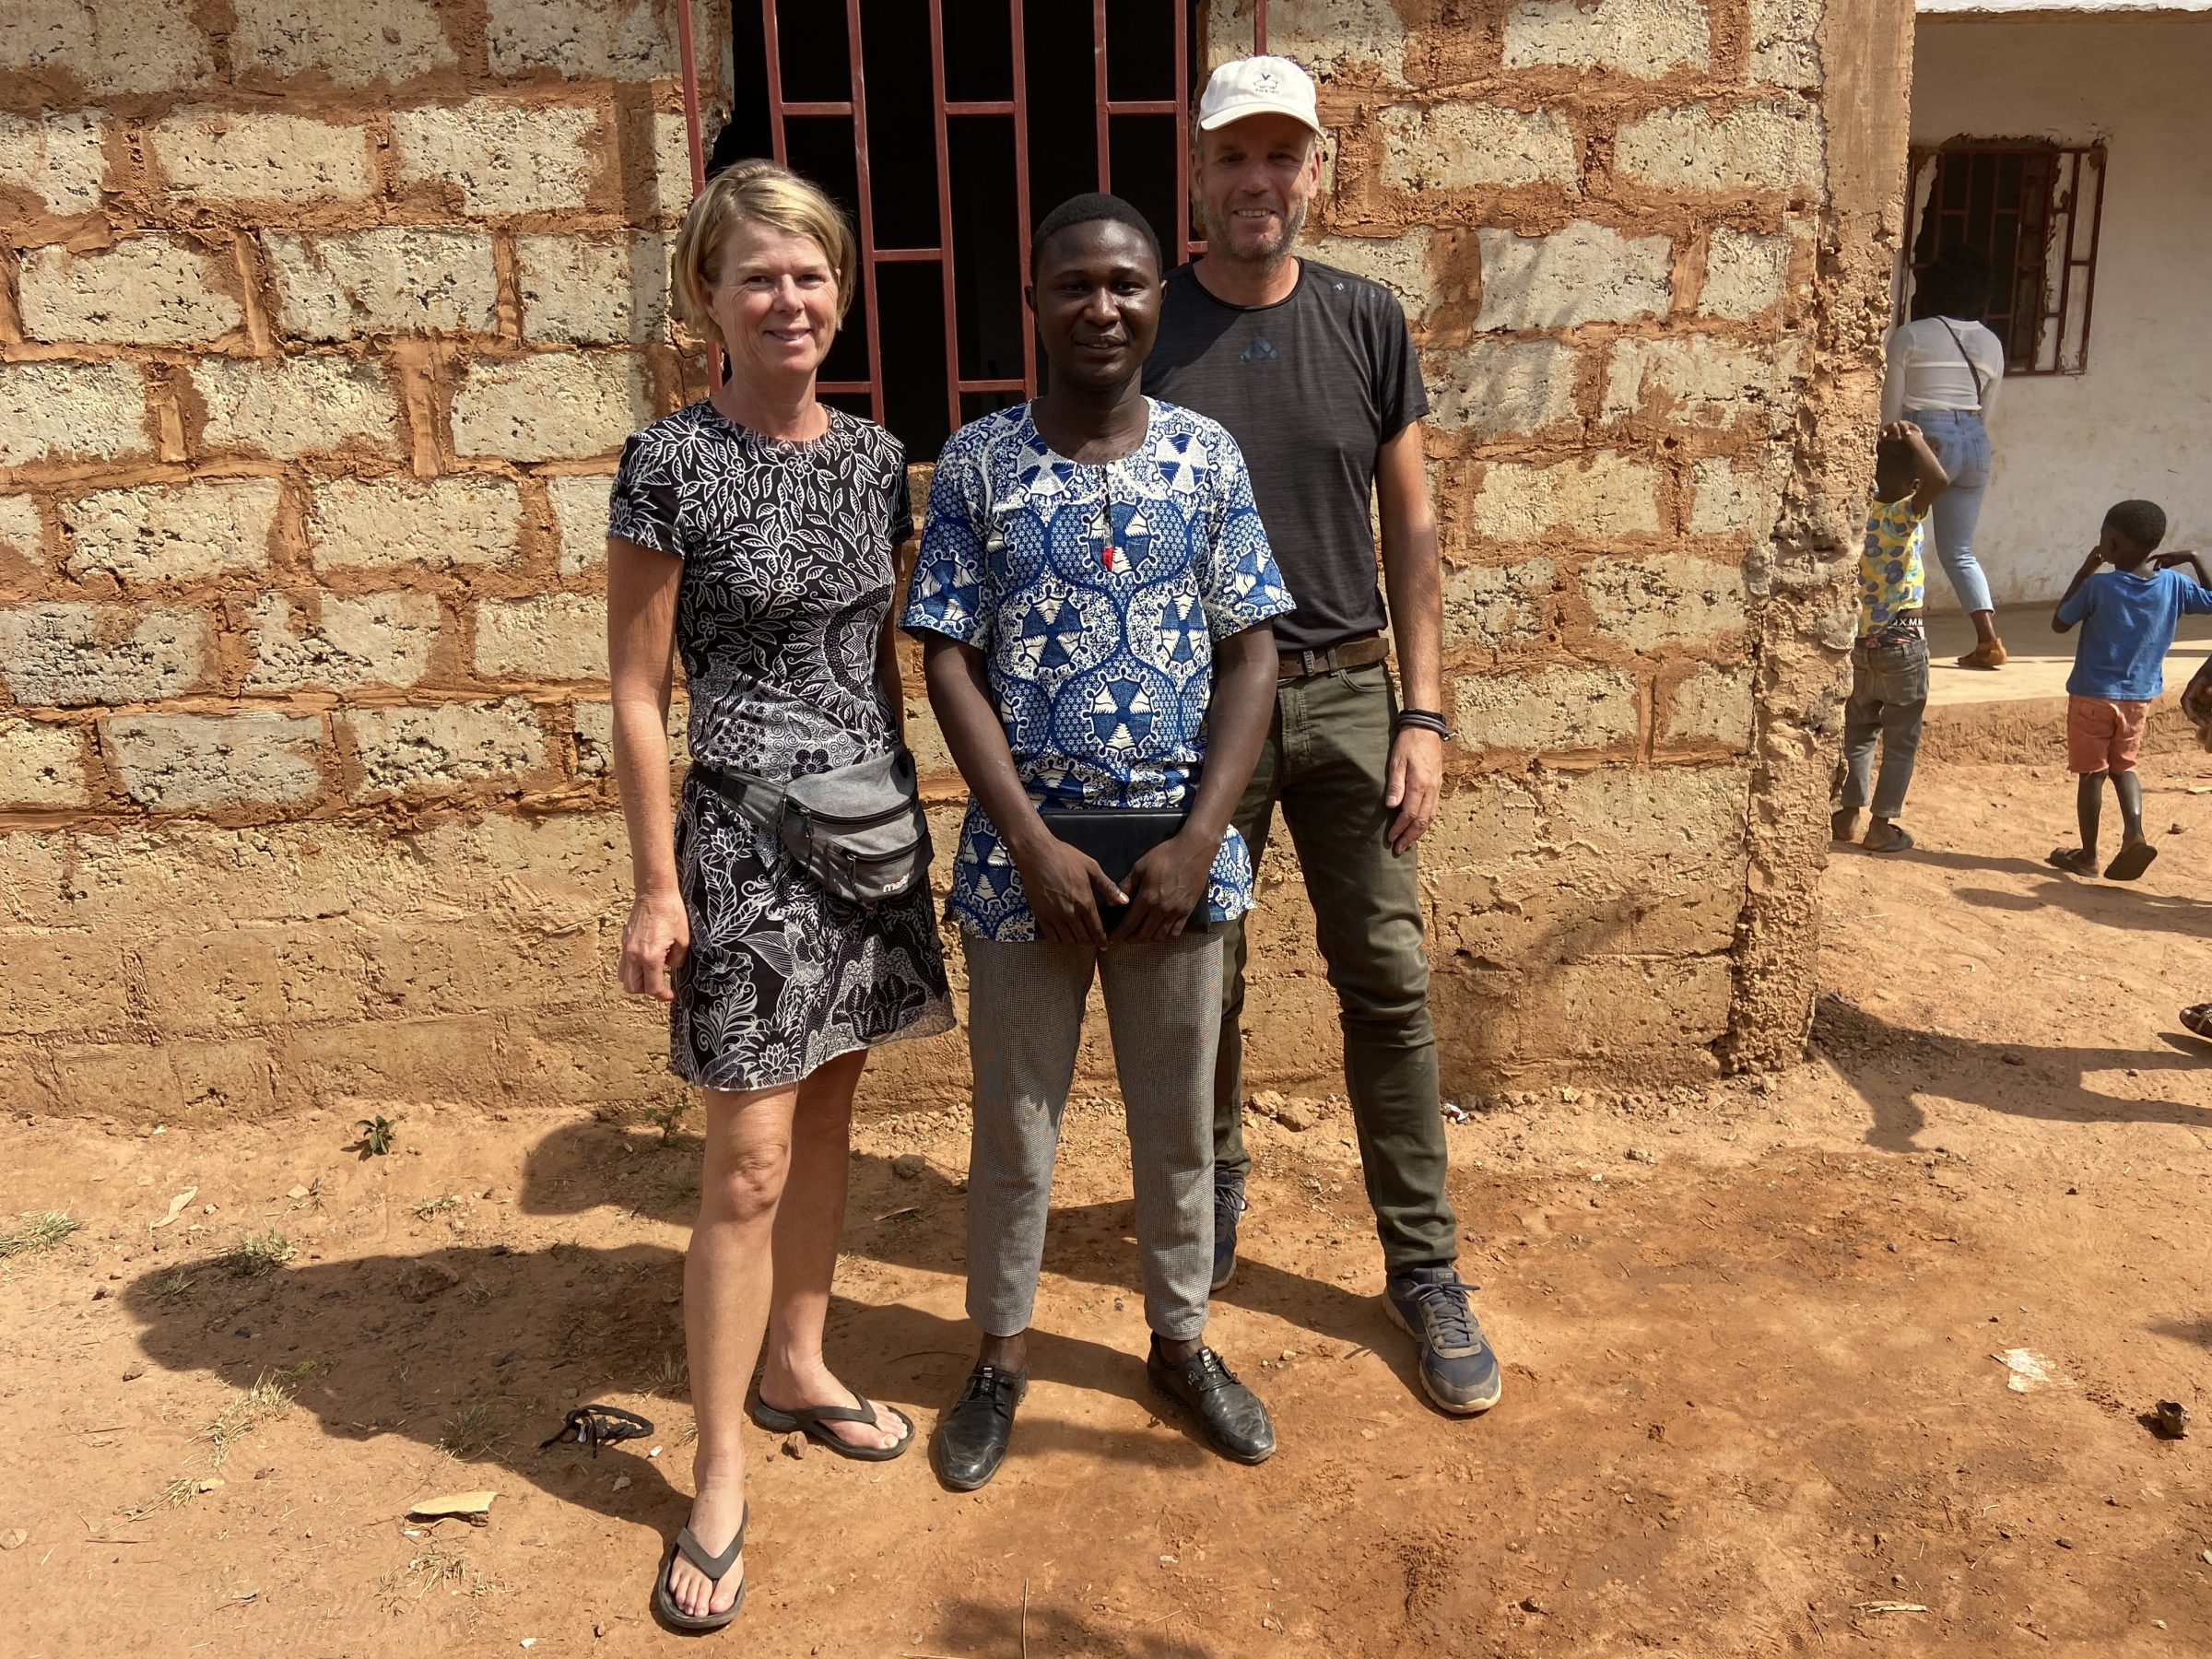 Samen met de voorganger | Overlanden in Guinea Bissau